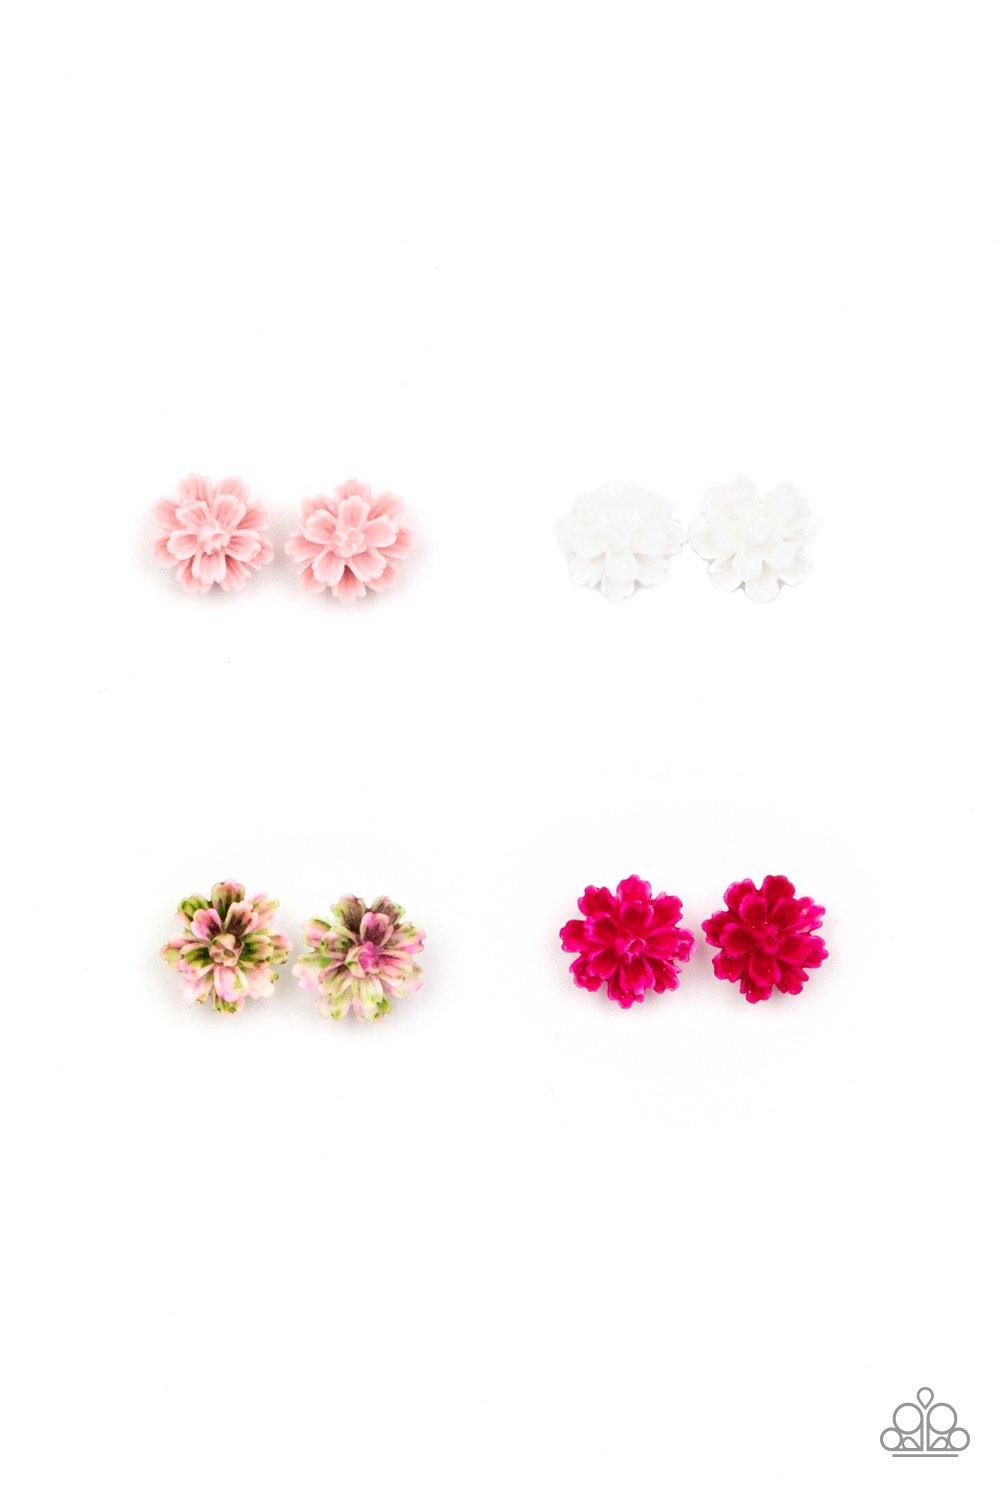   Starlet Shimmer Floral Earrings - Jewelry By Bretta